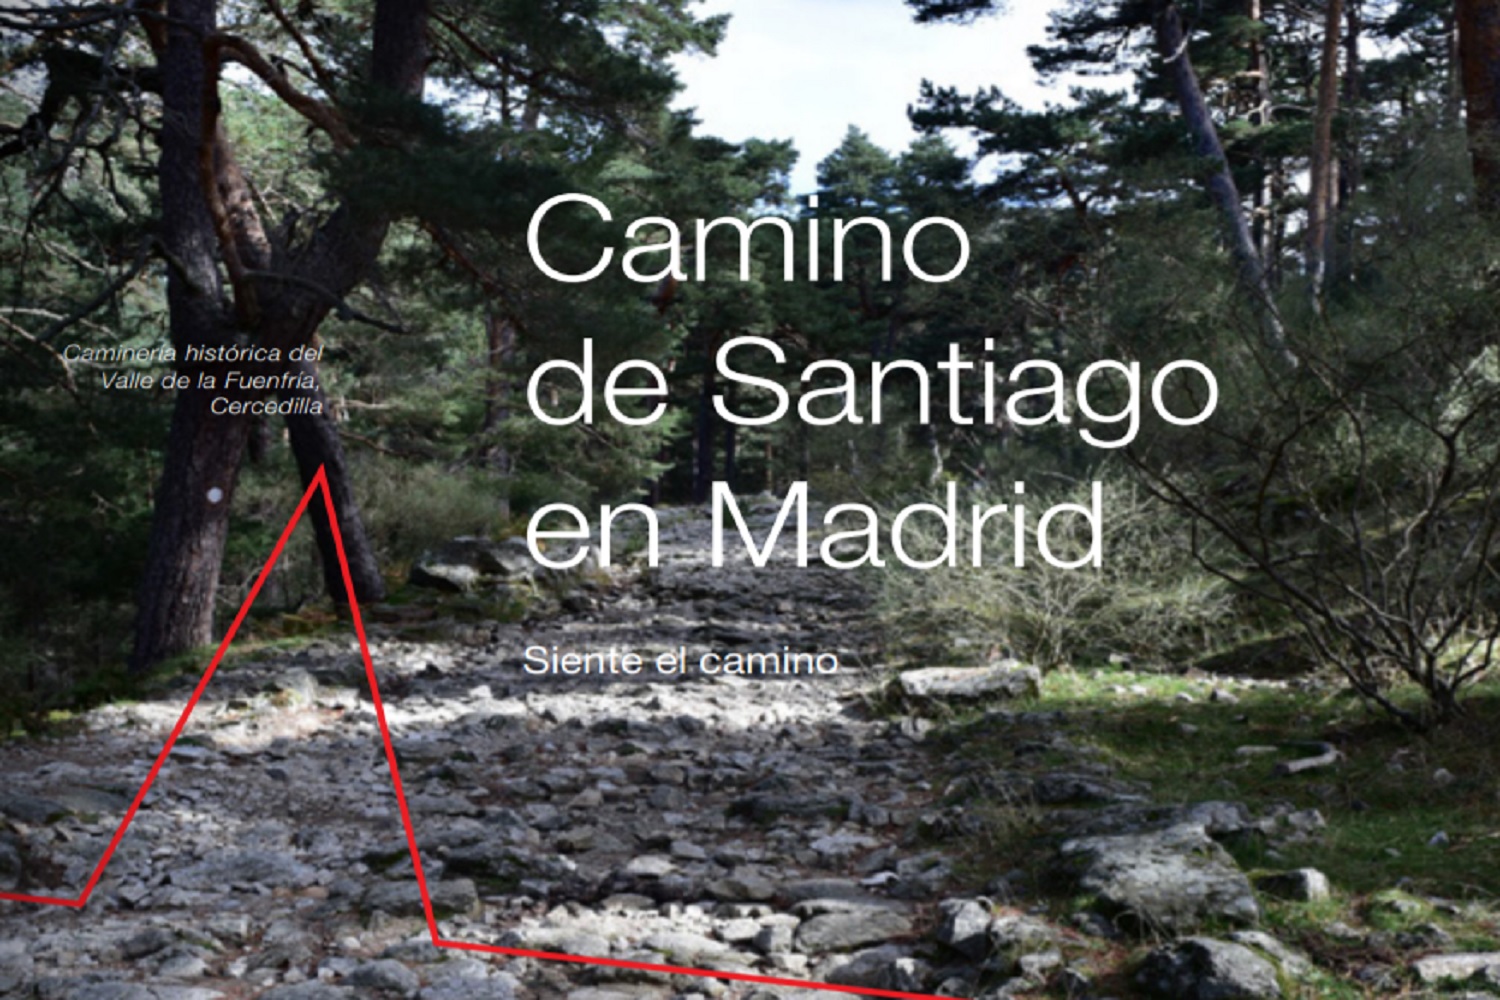 Camino de Santiago en Madrid